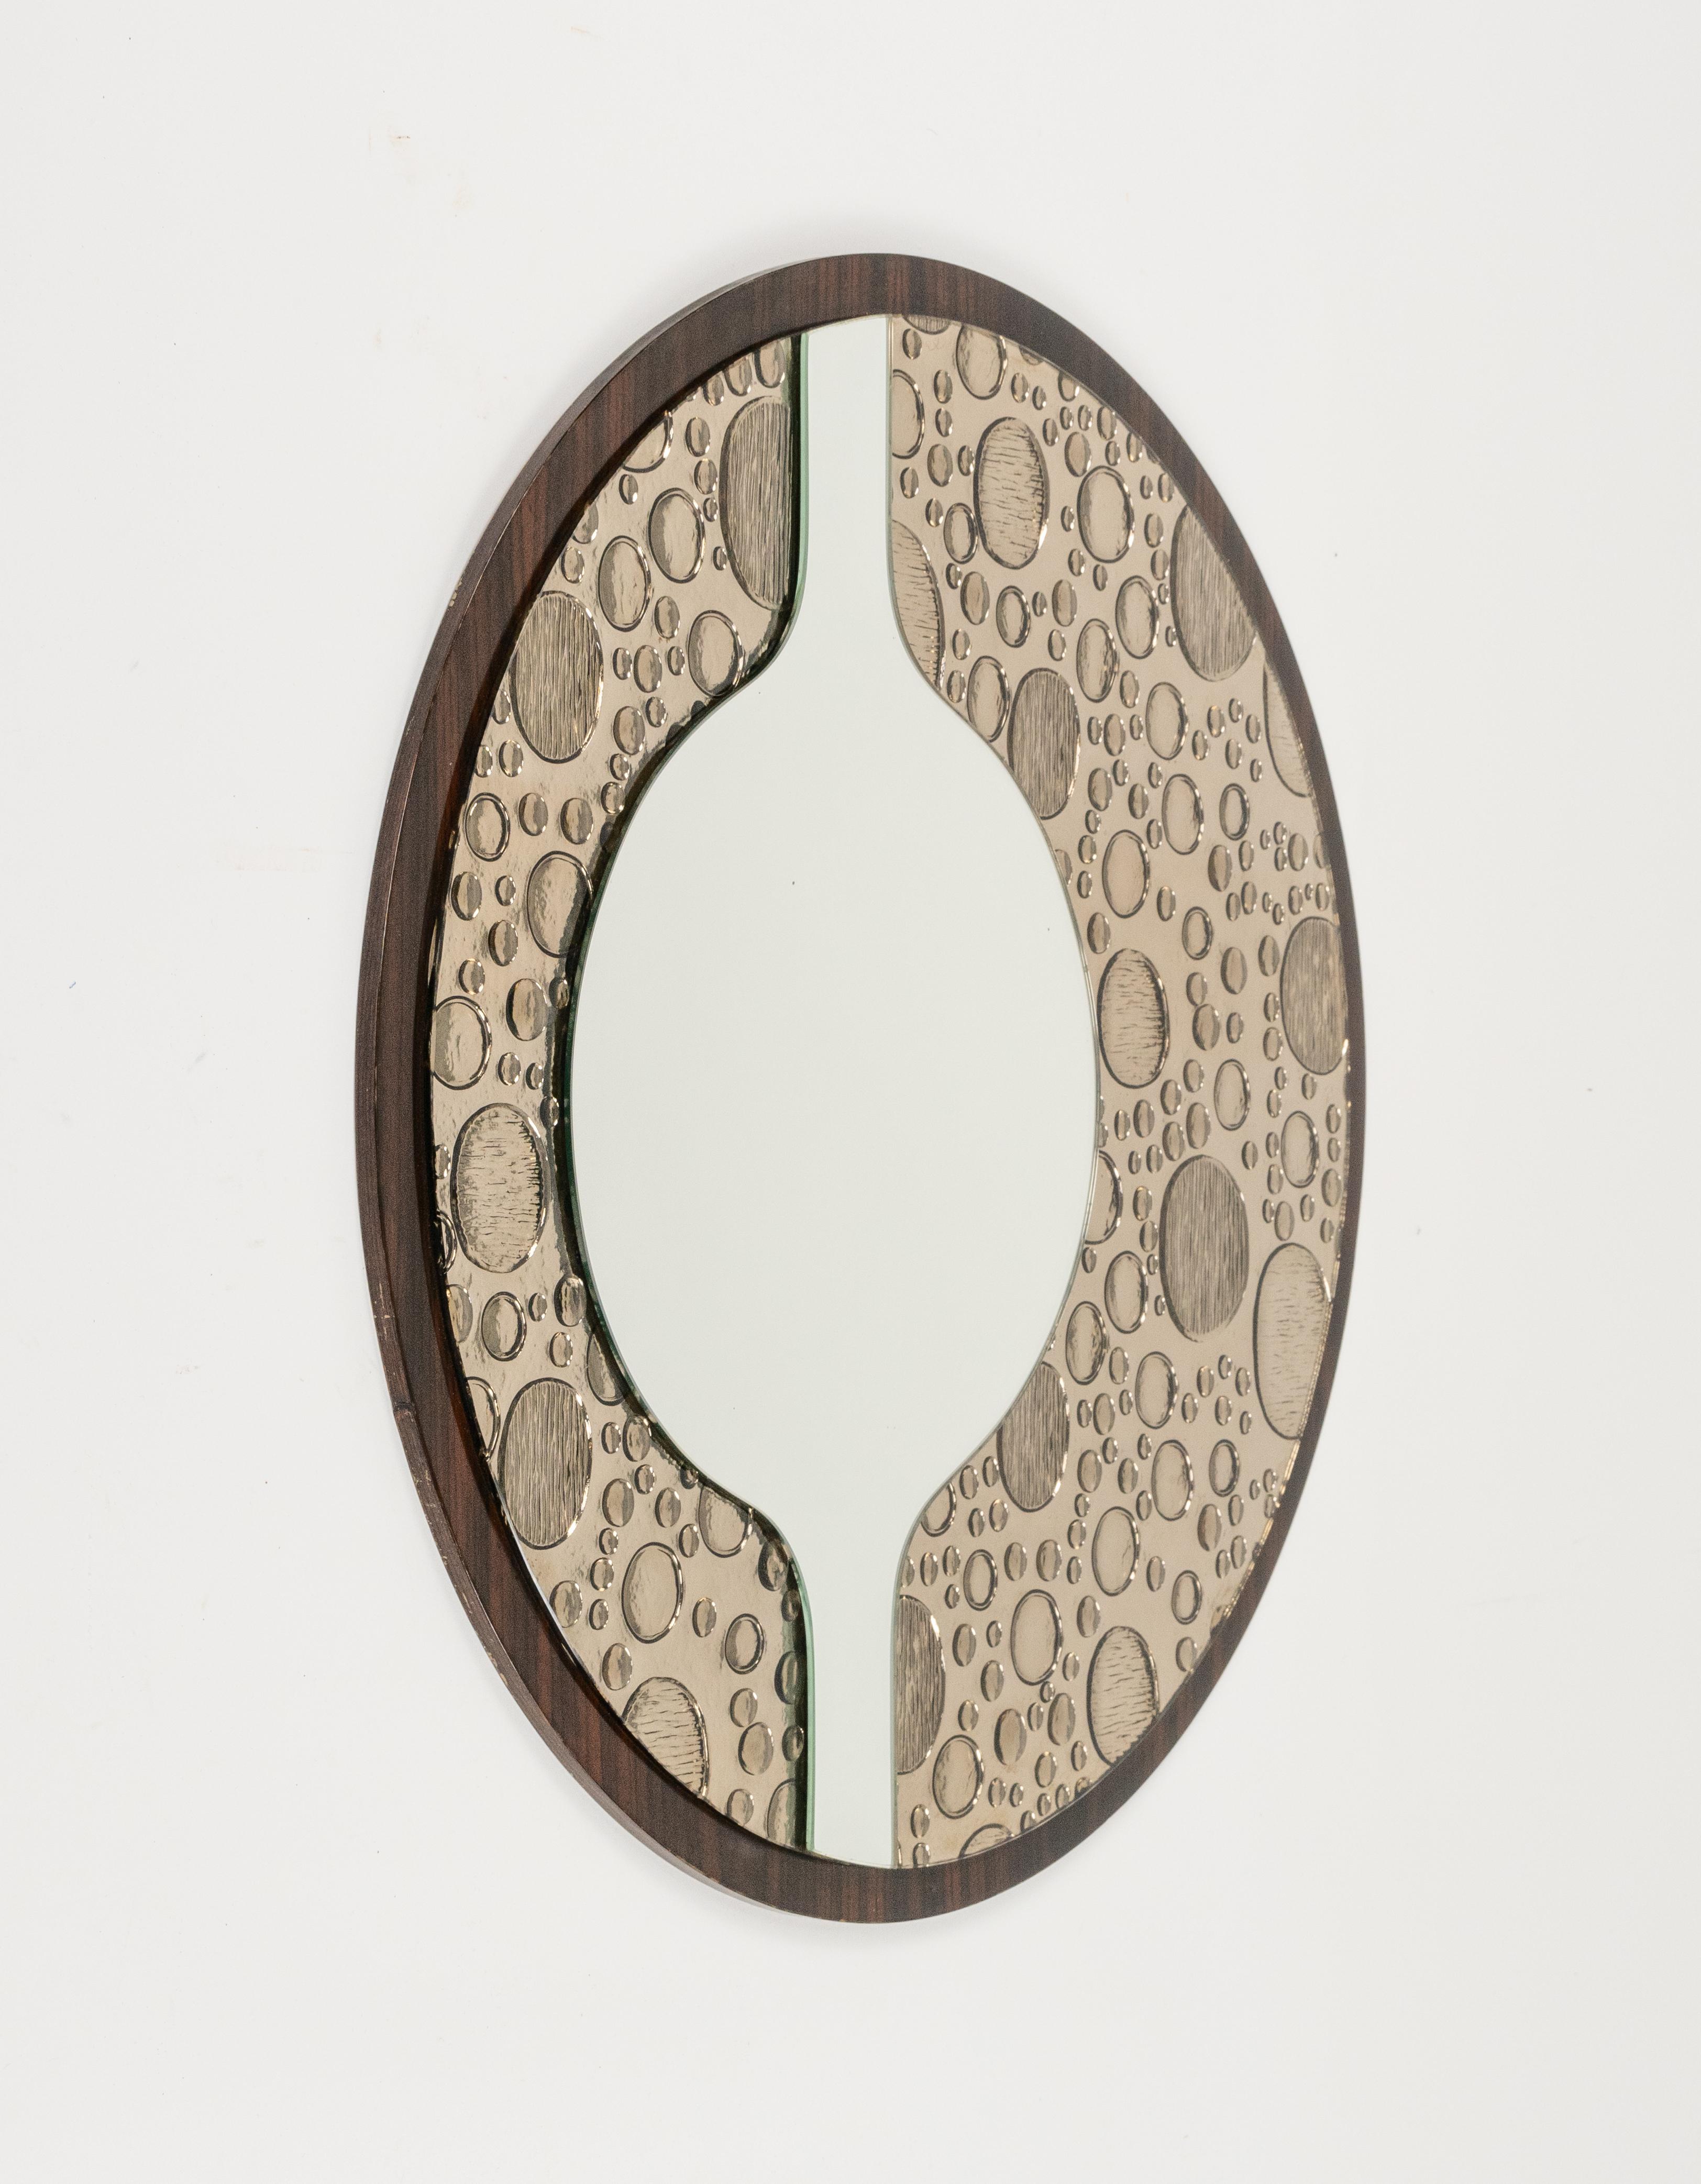 Midcentury erstaunliche runde Wandspiegel in Holz und Glas mit Blase verziert.

Hergestellt in Italien in den 1970er Jahren.